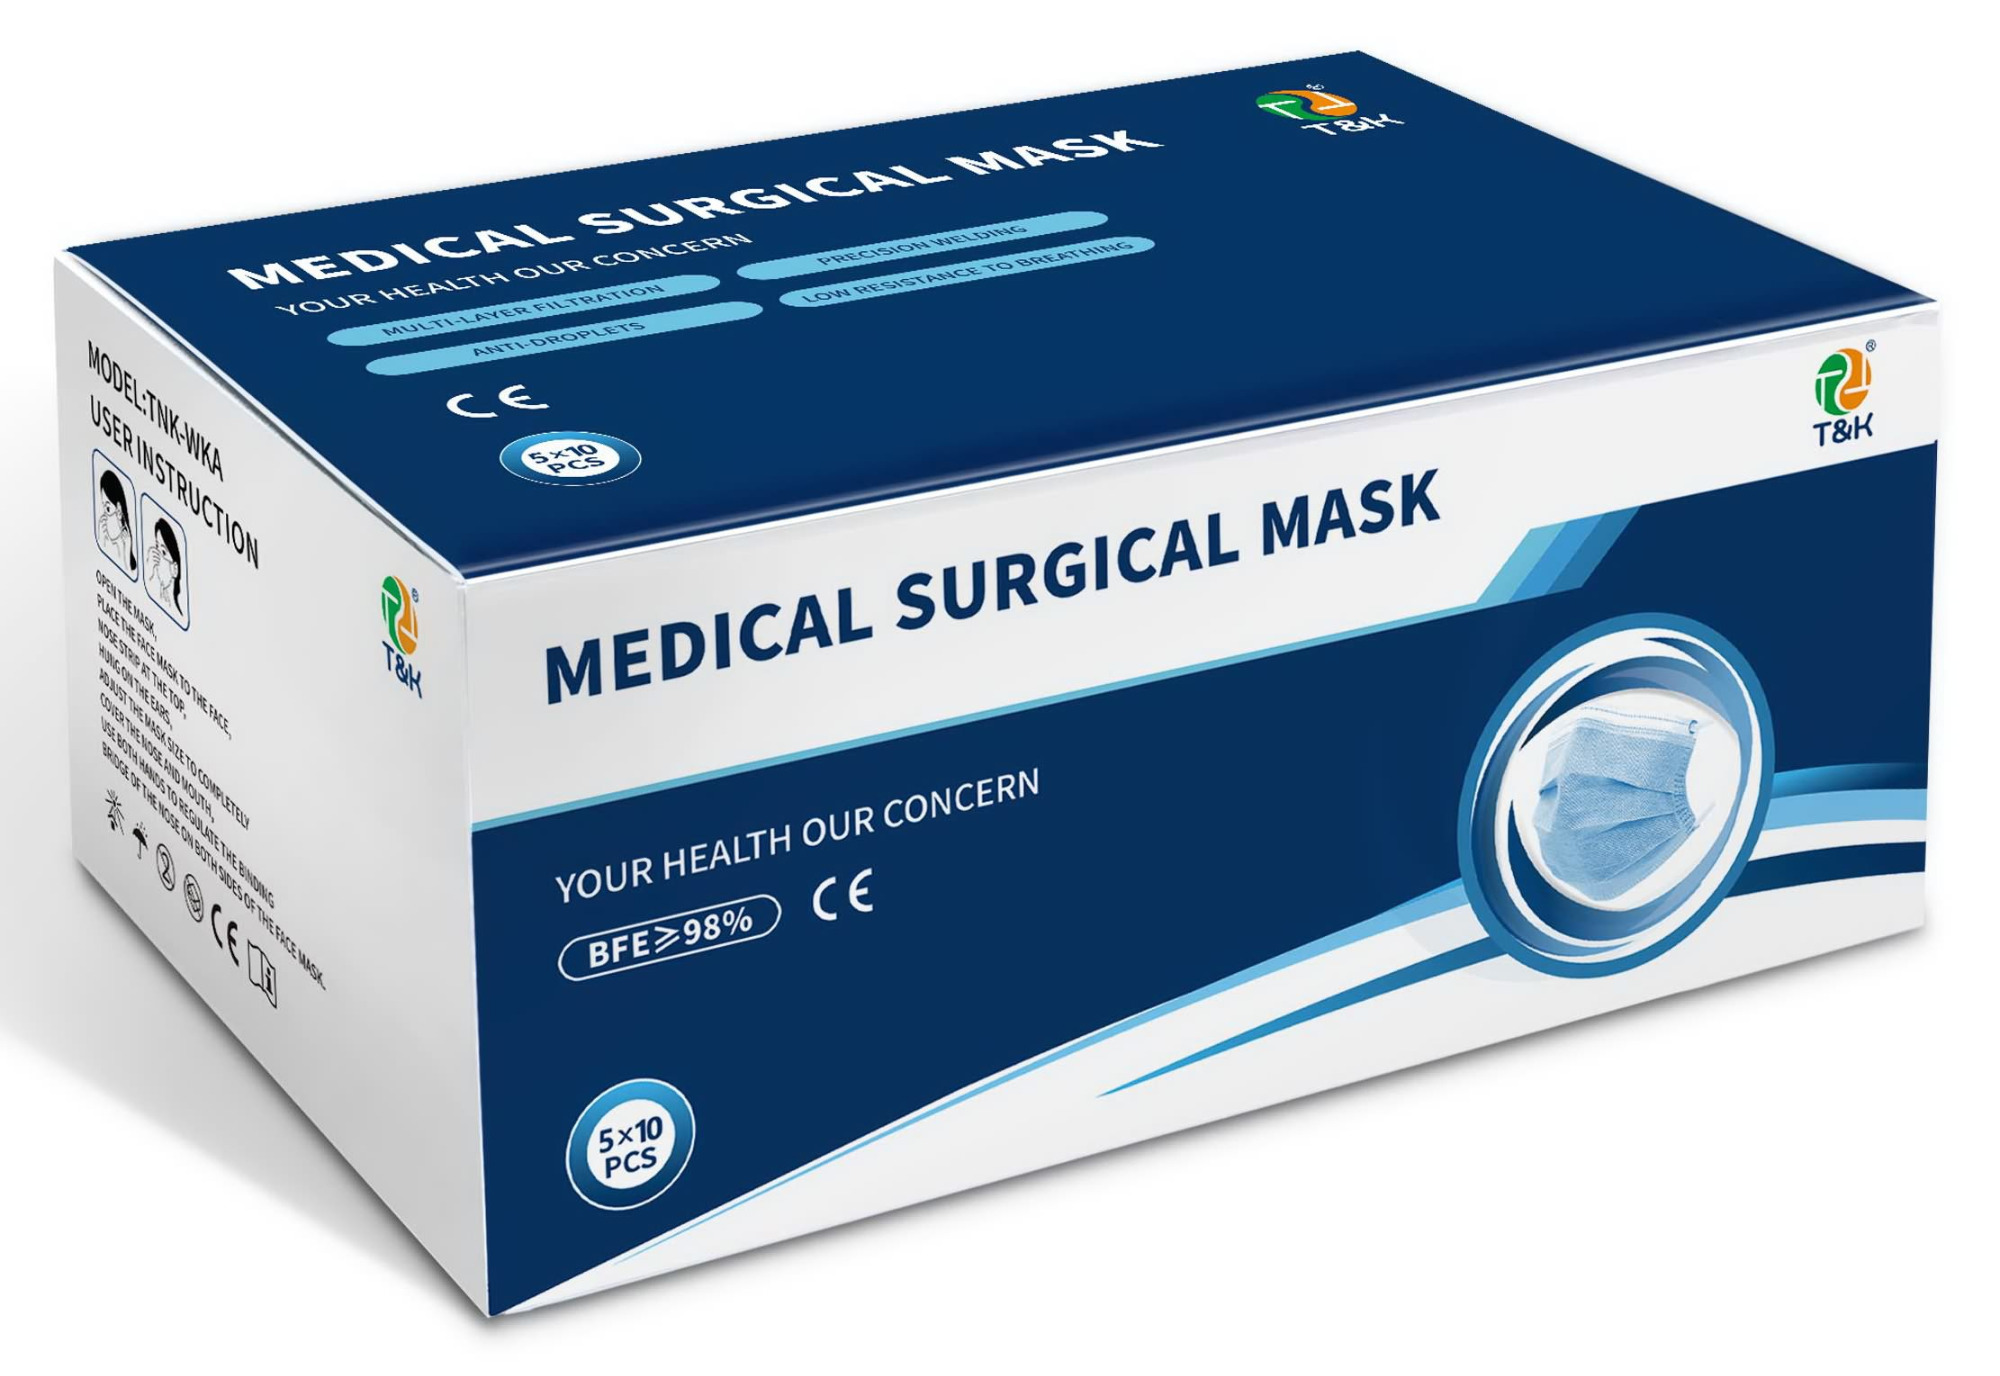 Ιατρική χειρουργική μάσκα τύπου IIR 3 στρώσεων (Ear-Loop)